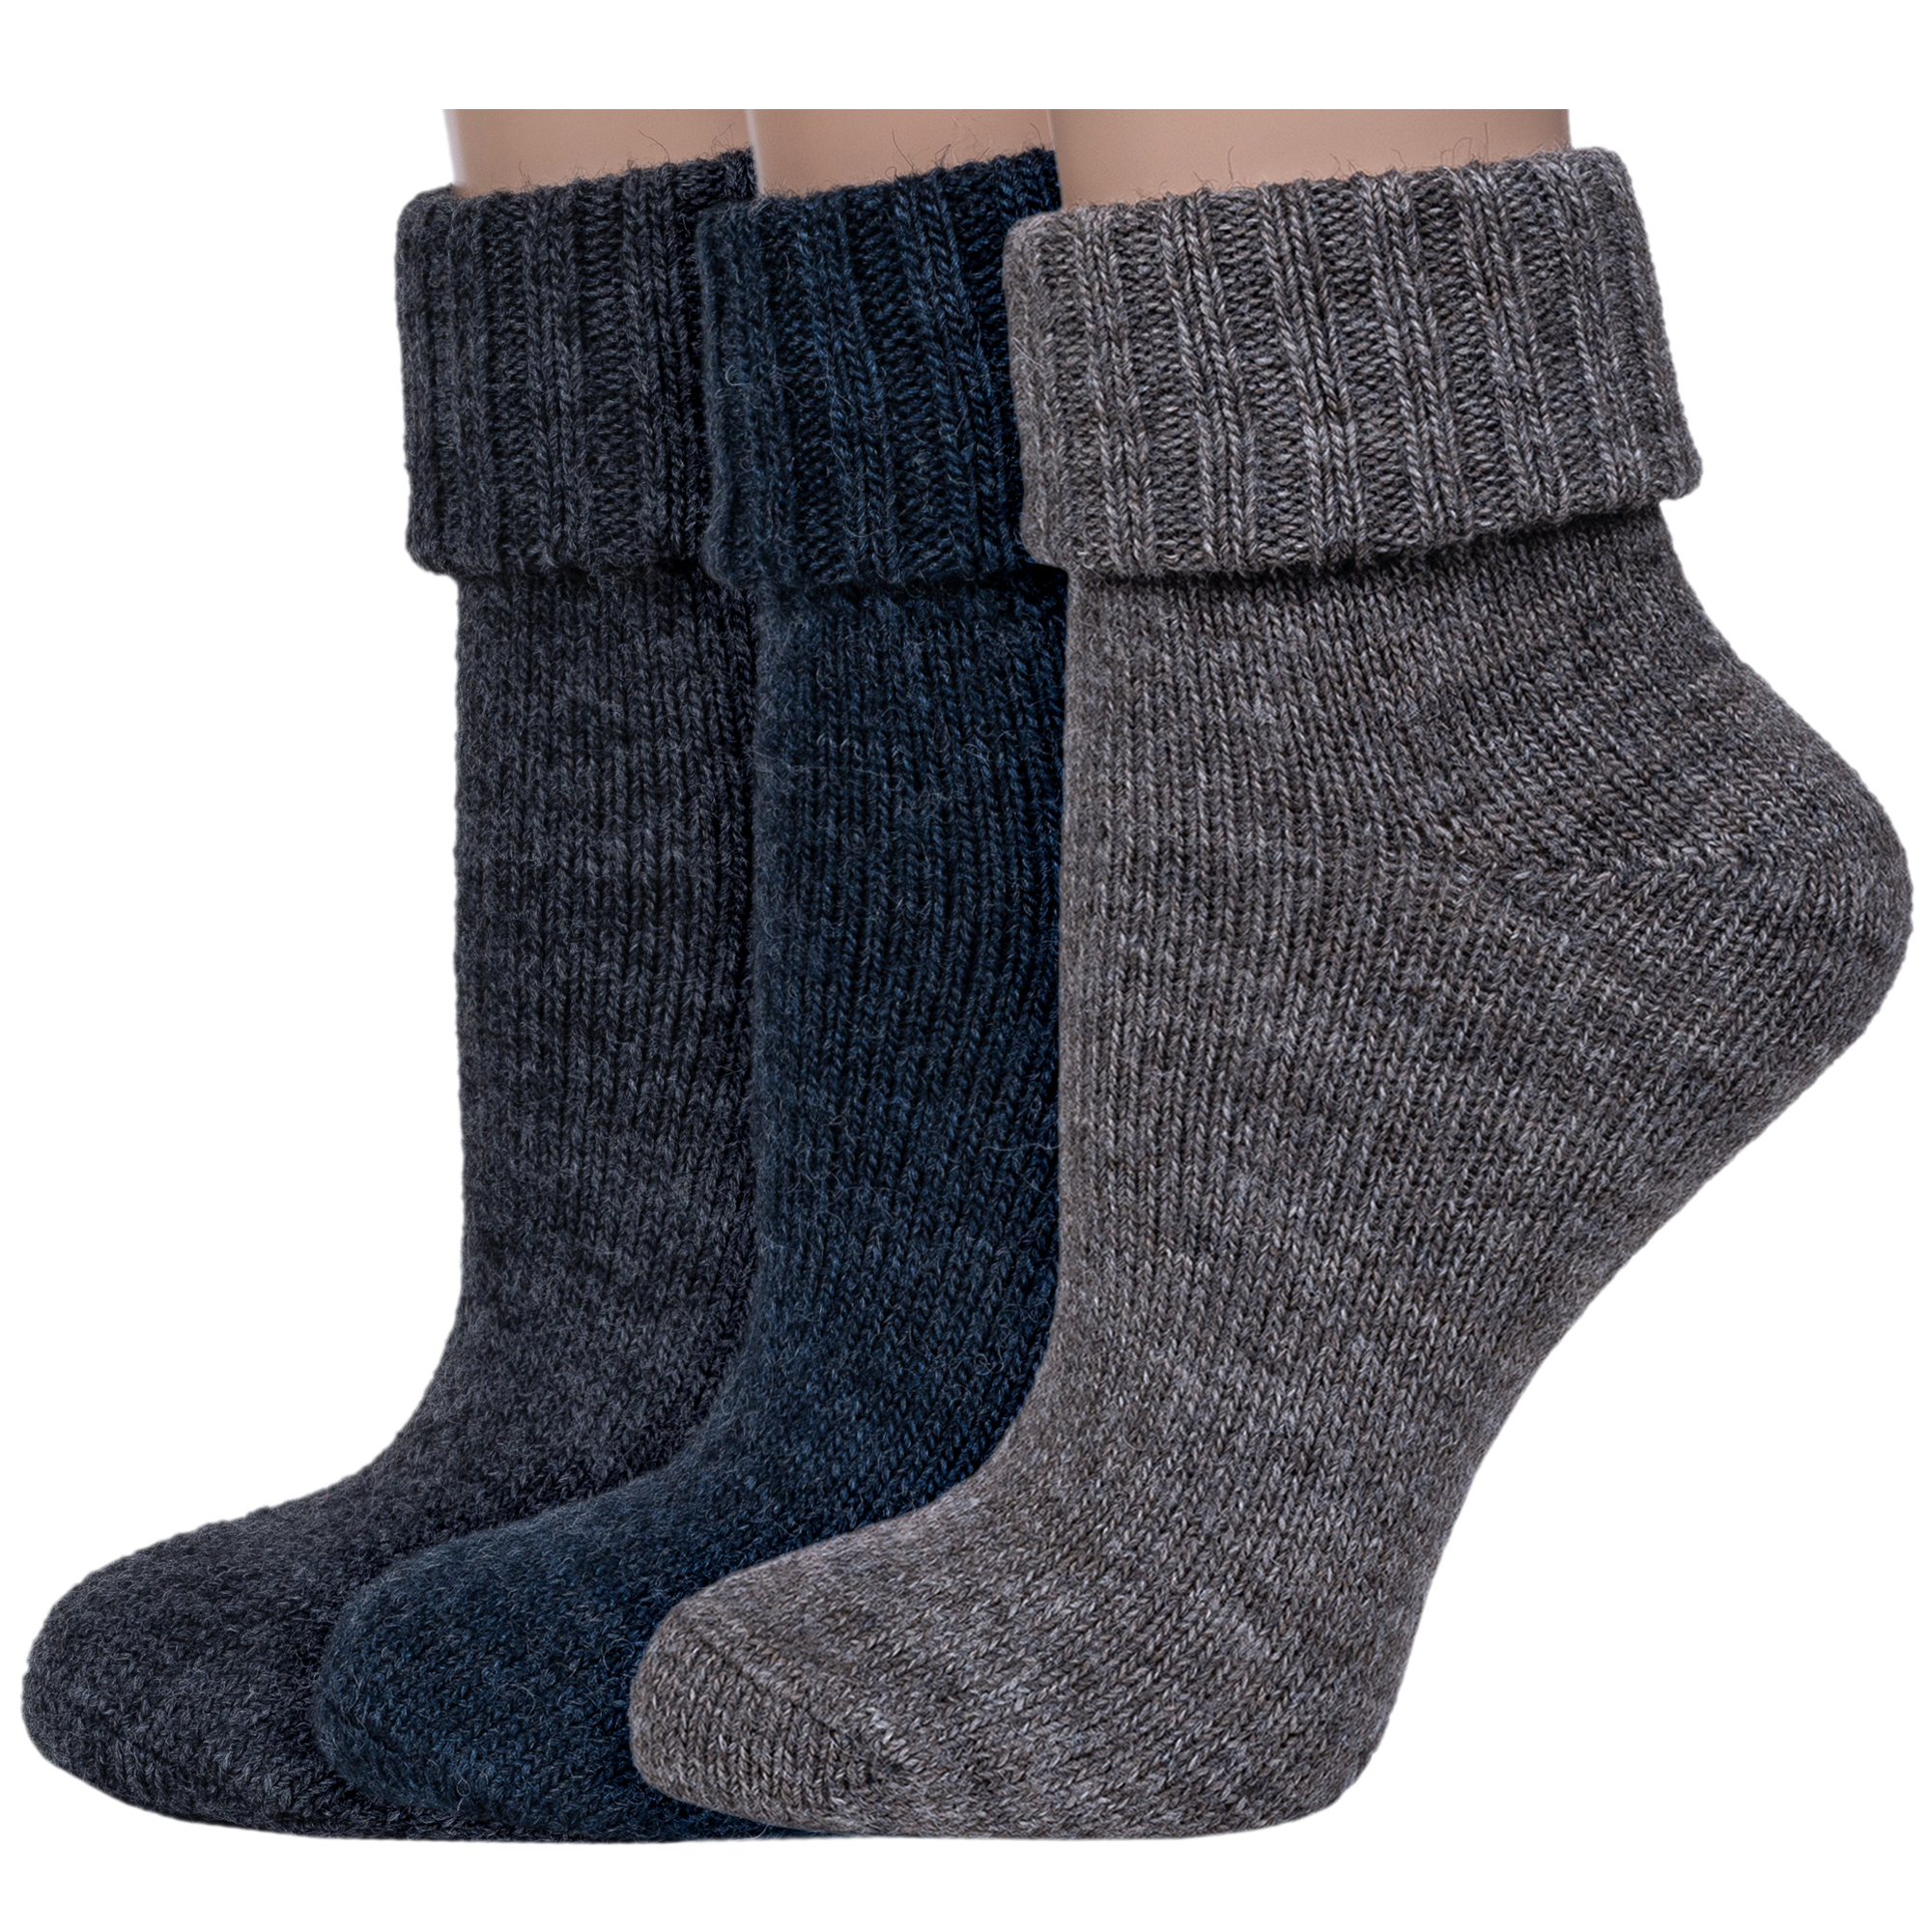 Комплект носков женских Rusocks 3-Ж-195 серых; синих 23-25